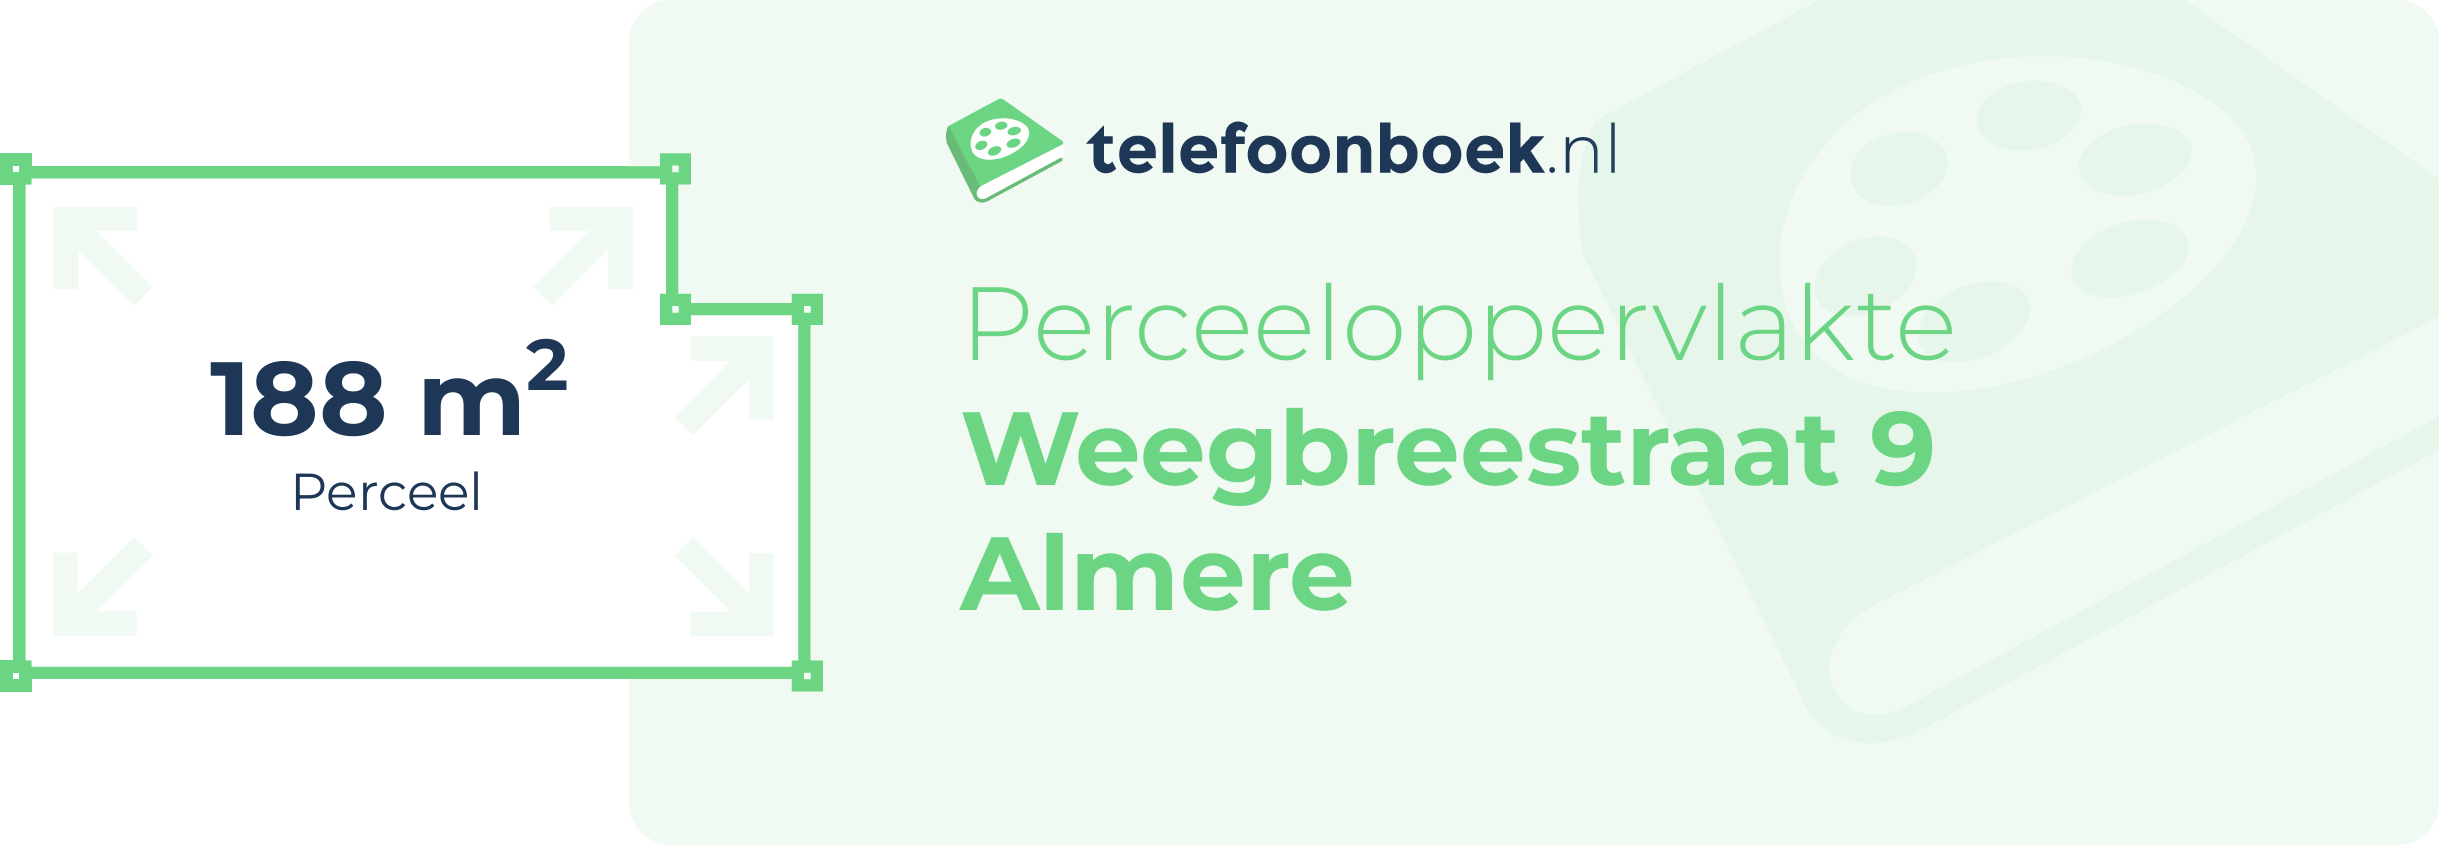 Perceeloppervlakte Weegbreestraat 9 Almere